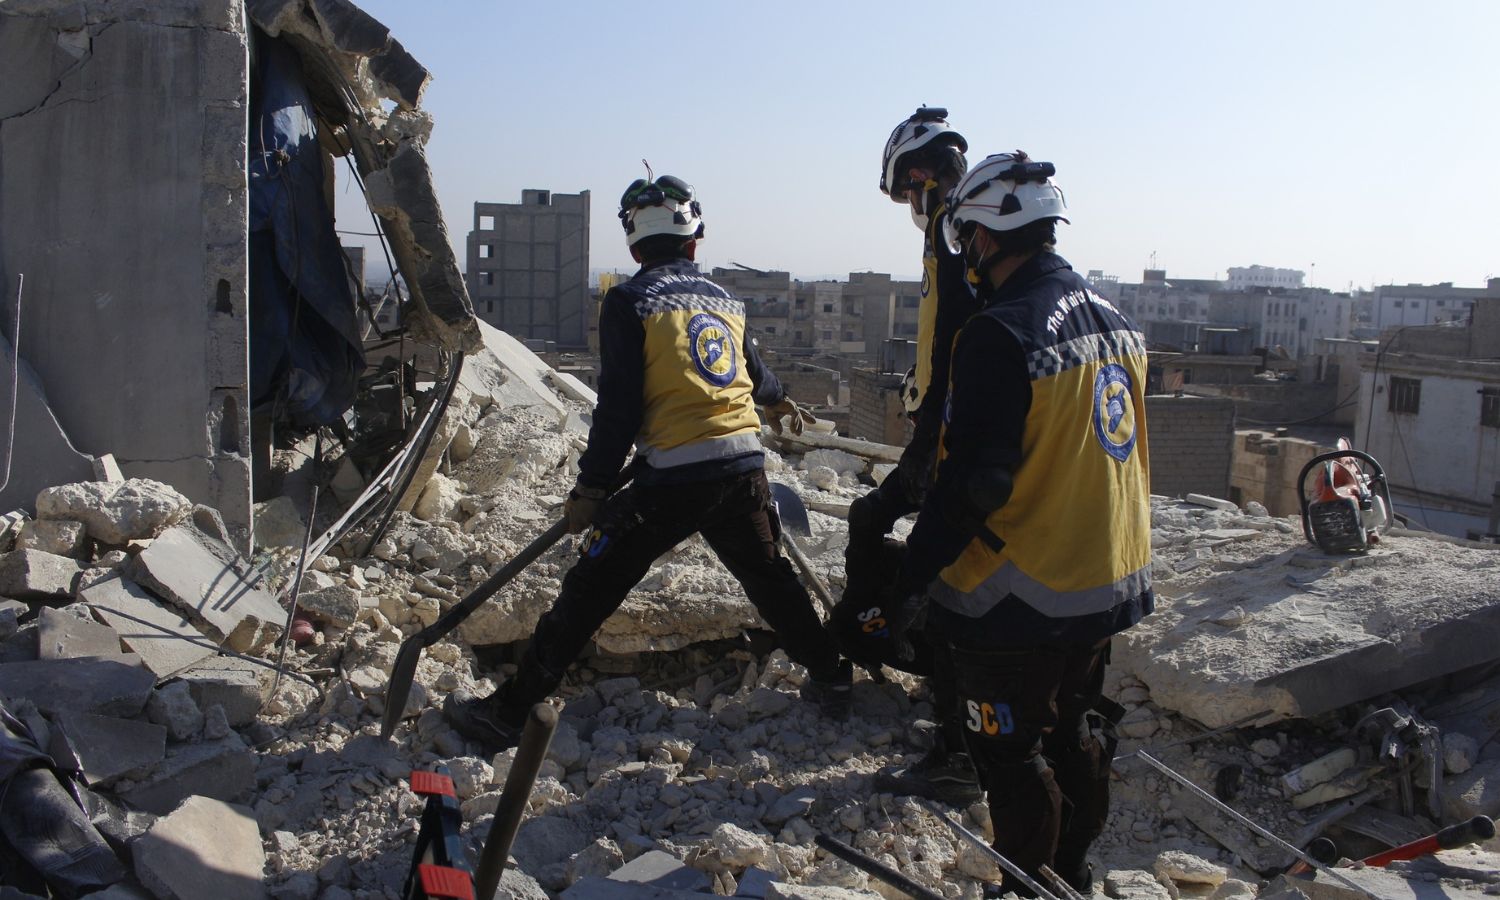 متطوعون في "الدفاع المدني السوري" يتفقدون منزلًا قصفته طائرة مسيّرة مجهولة الهوية (يُعتقد أنها للتحالف الدولي) في مدينة الباب شرقي حلب- 20 من كانون الأول 2022 (الدفاع المدني السوري/ فيس بوك)